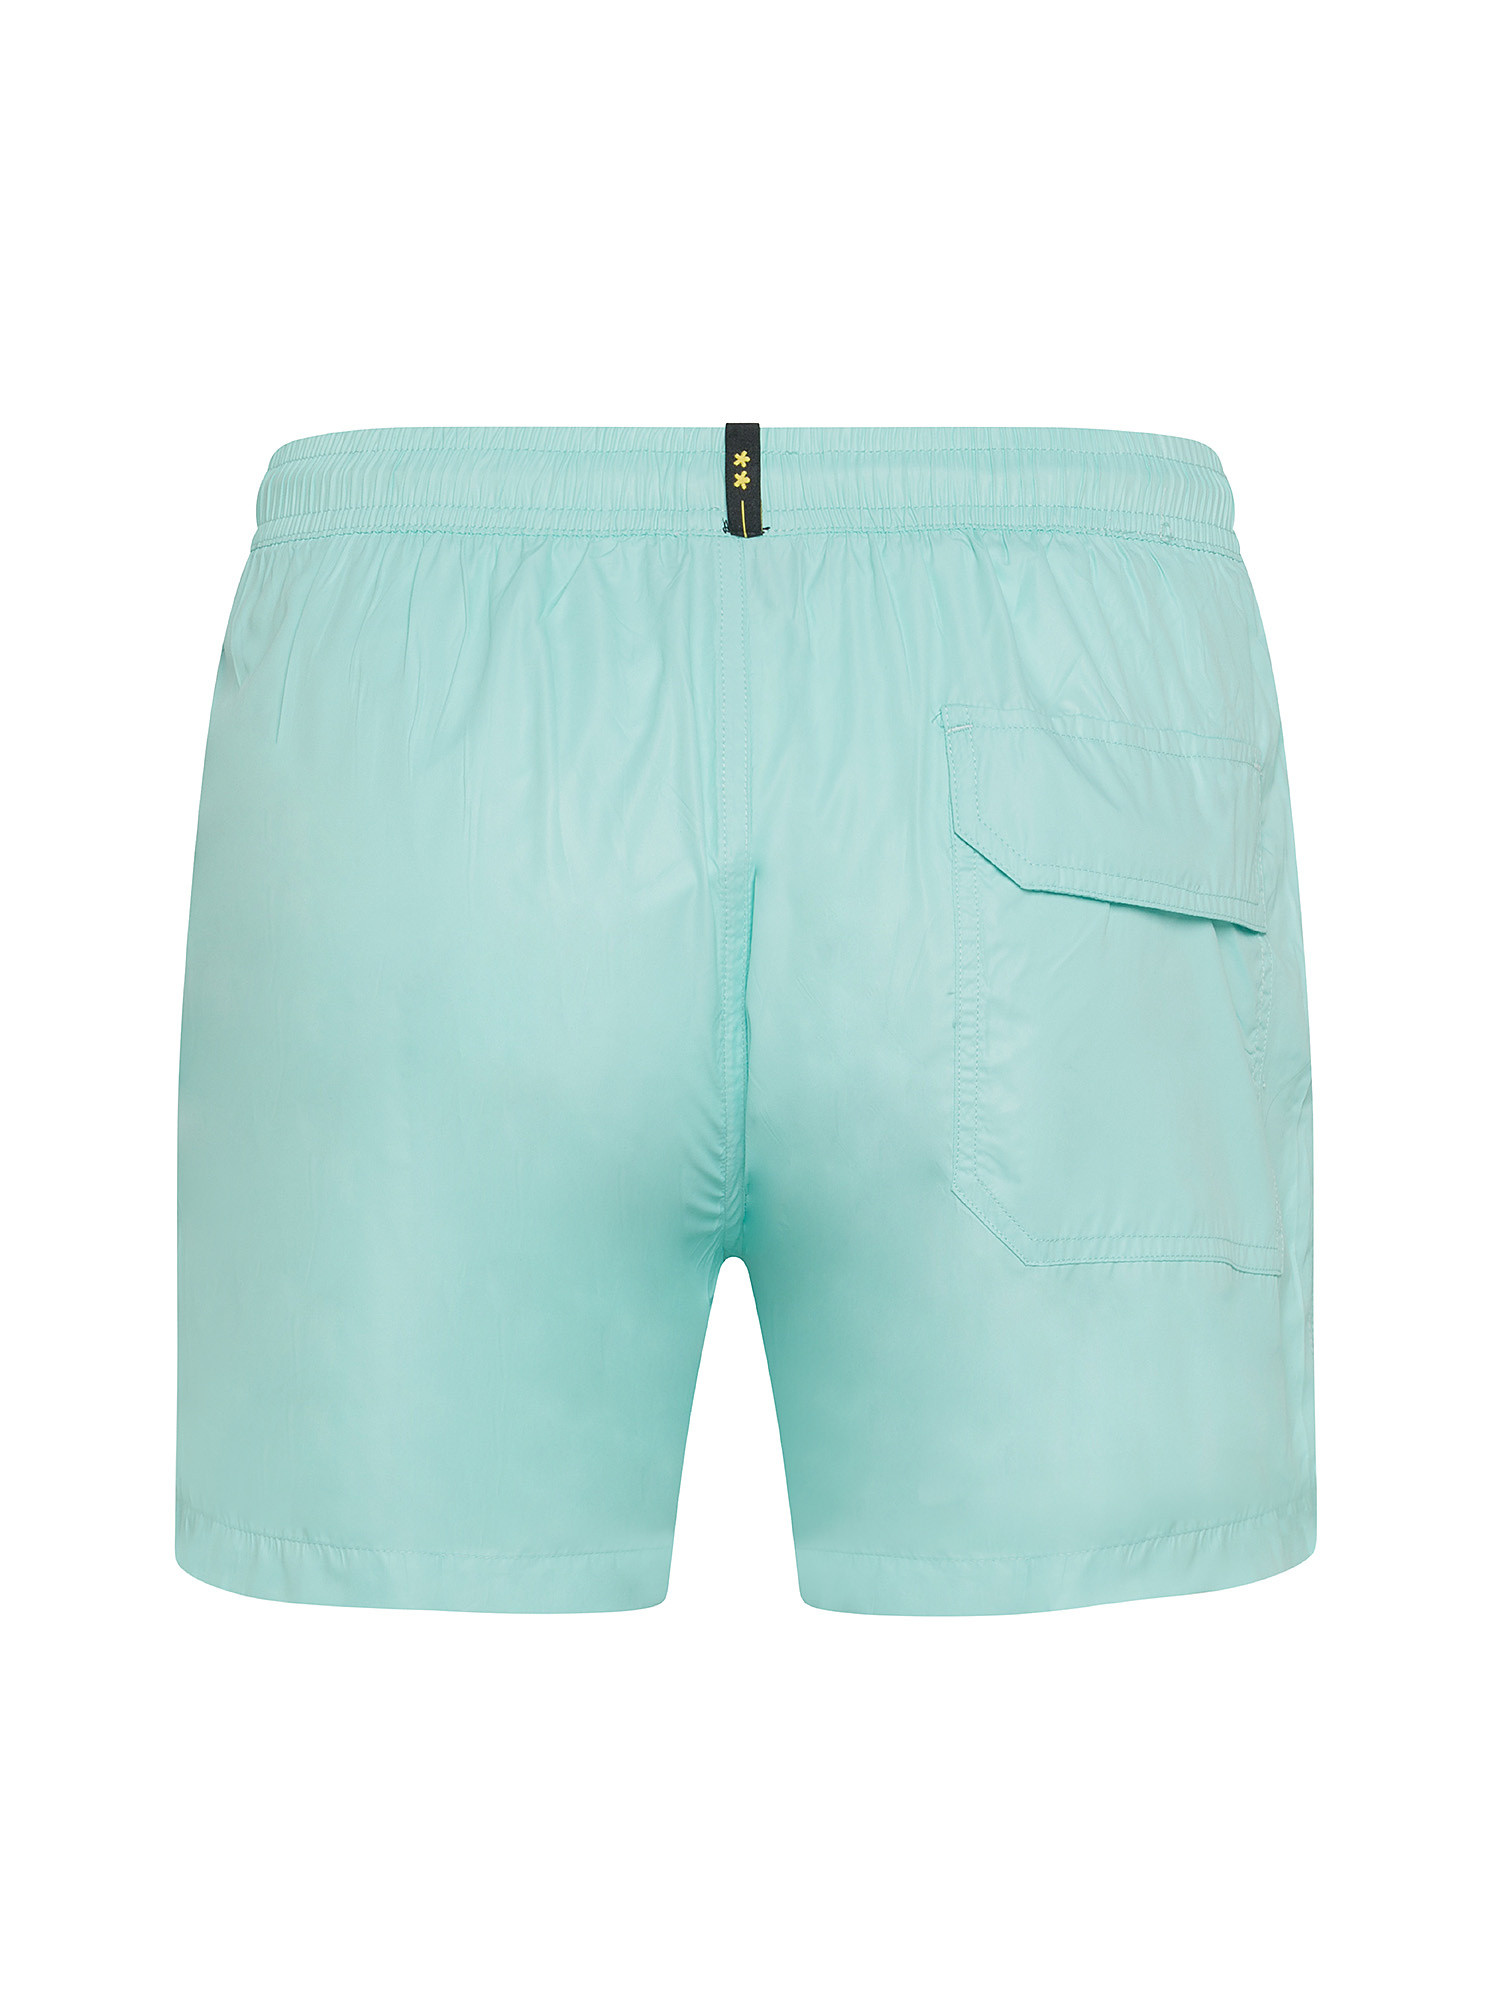 F**K - Shiny swim shorts, Light Blue, large image number 1